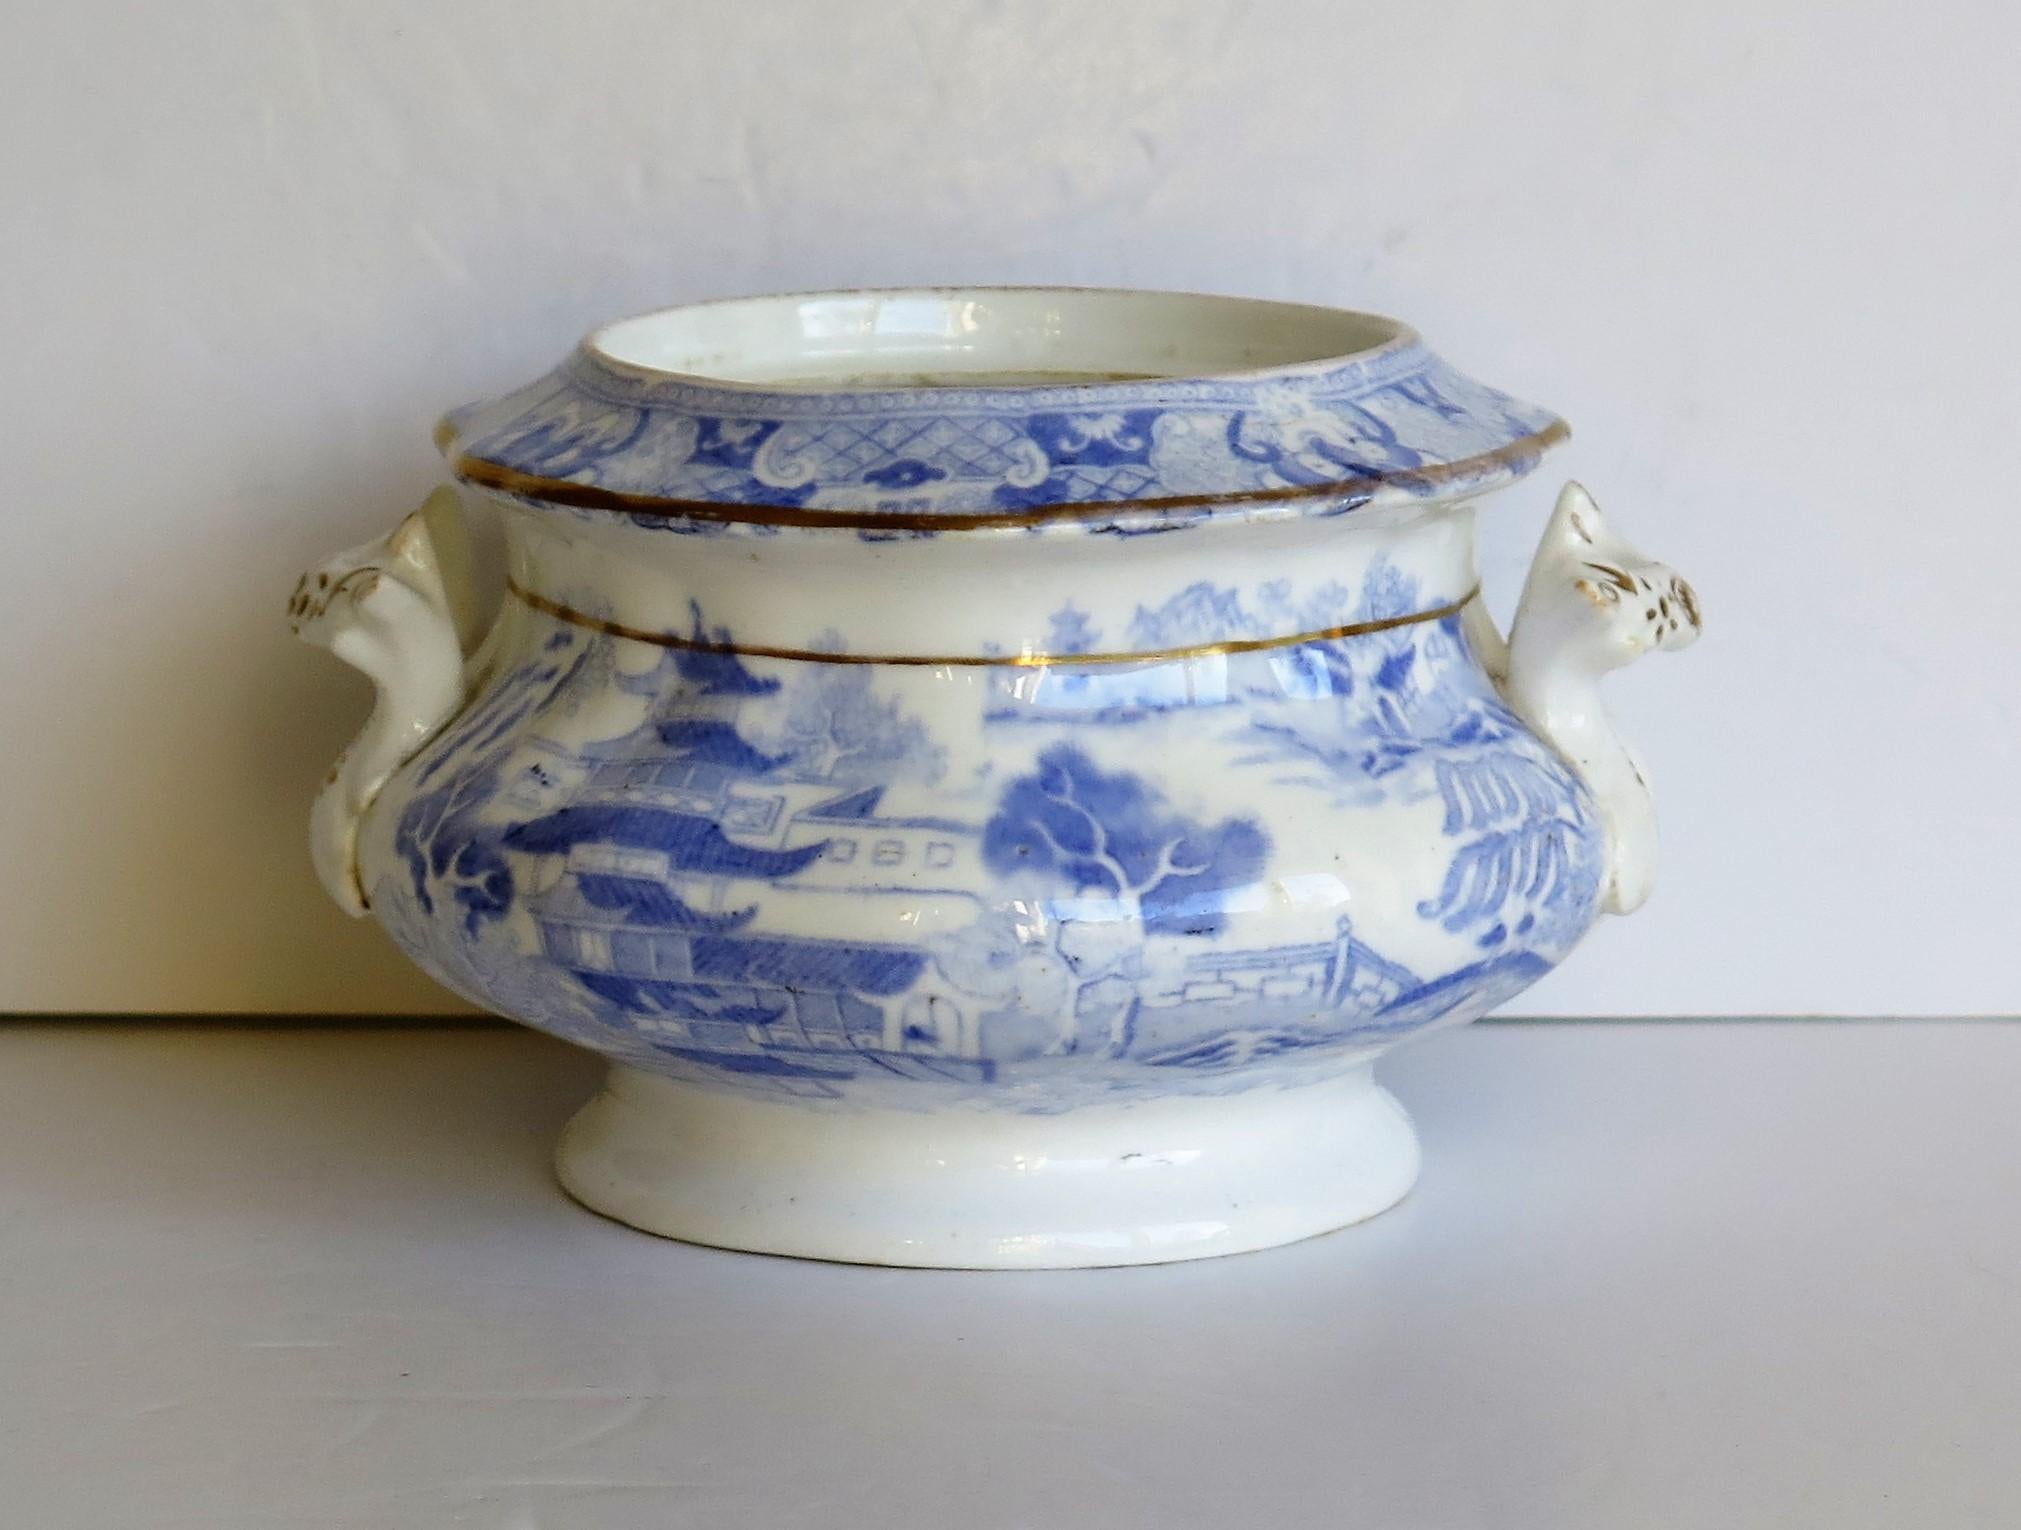 Il s'agit d'un Sucrier (bol à sucre) en porcelaine bleu et blanc, doré à la main, au motif imprimé Broseley, fabriqué par Miles Mason (Mason's), Staffordshire Potteries, au début du XIXe siècle, vers 1810.

Cette pièce est bien empotée, avec une